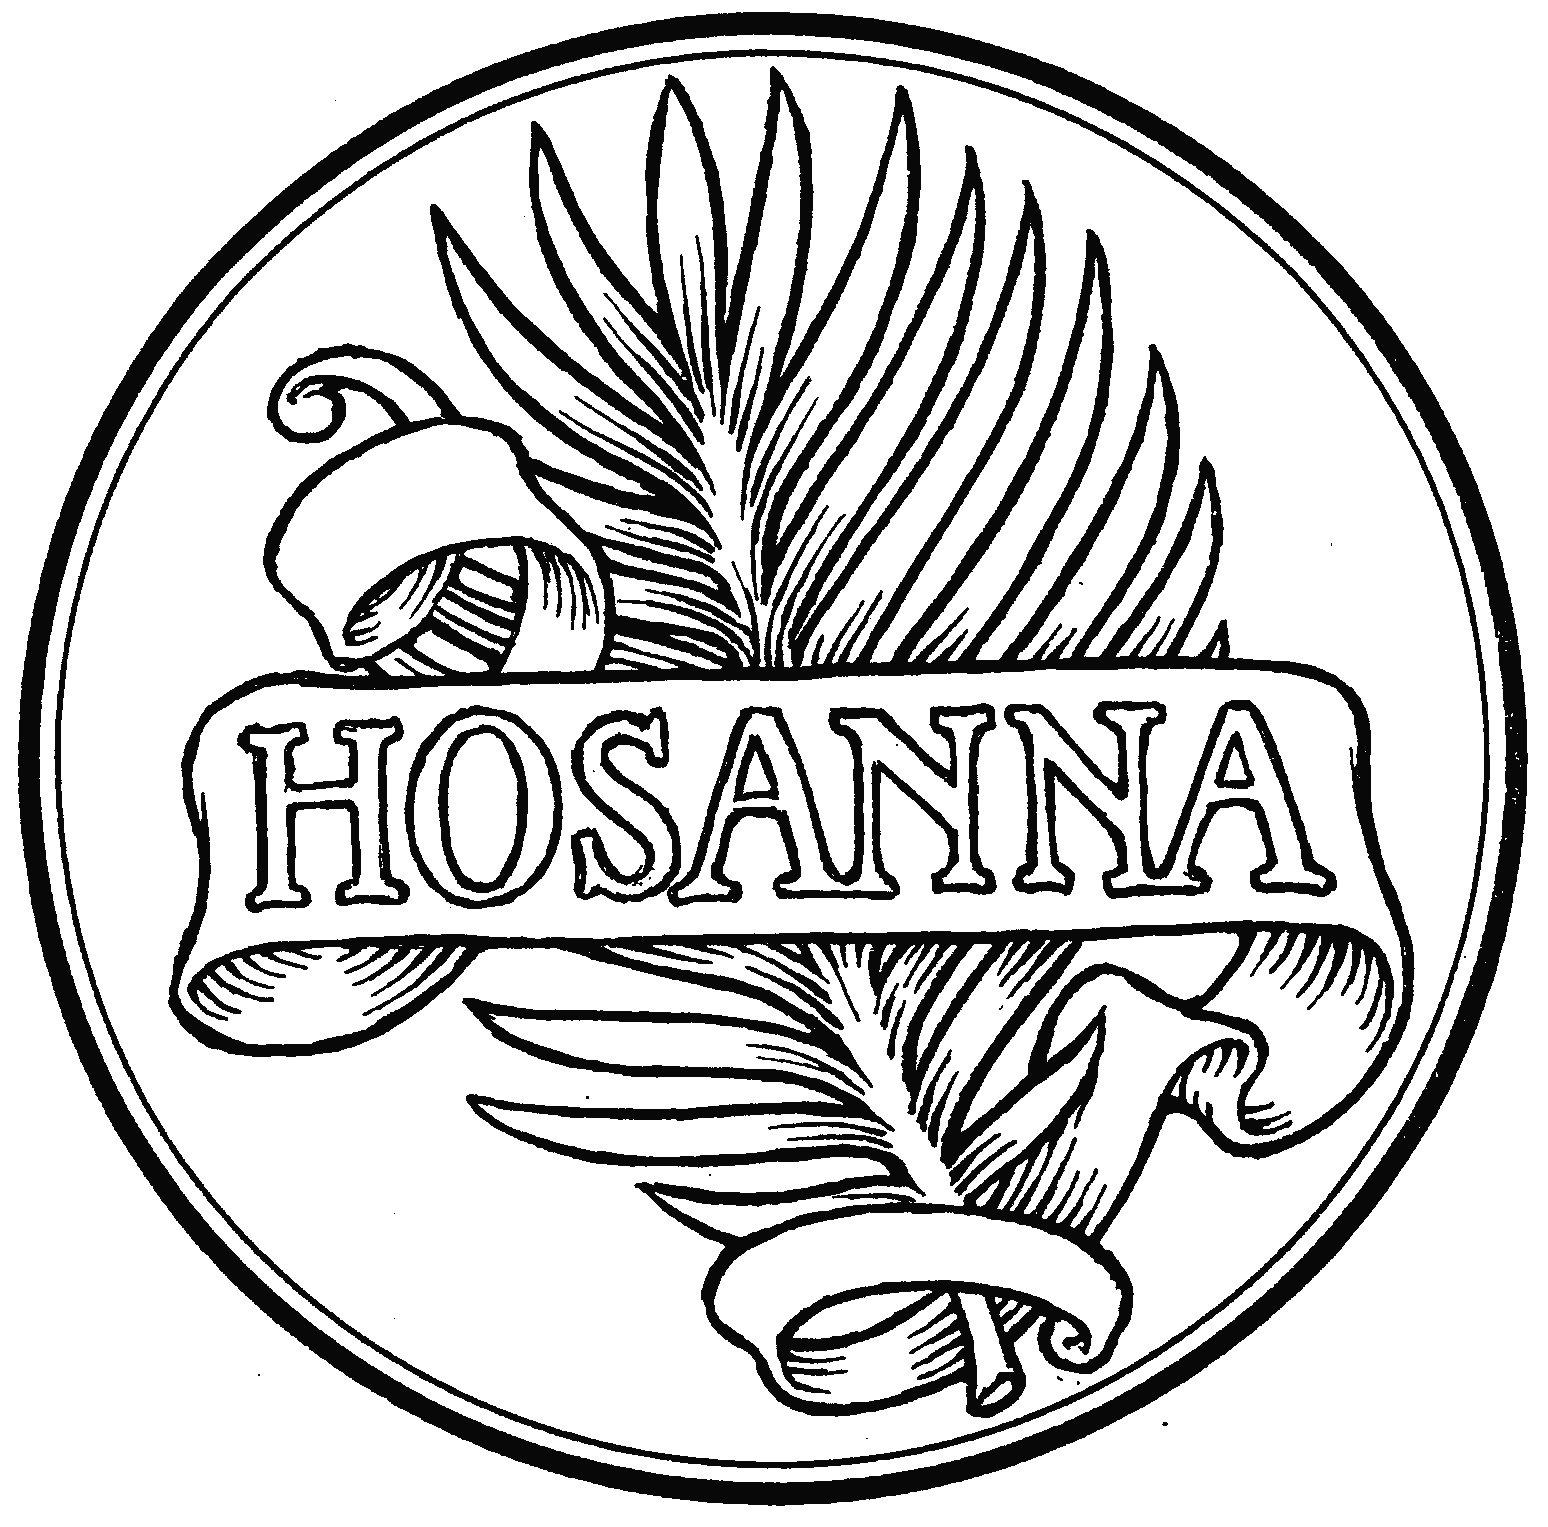 Hosanna Save Us Now